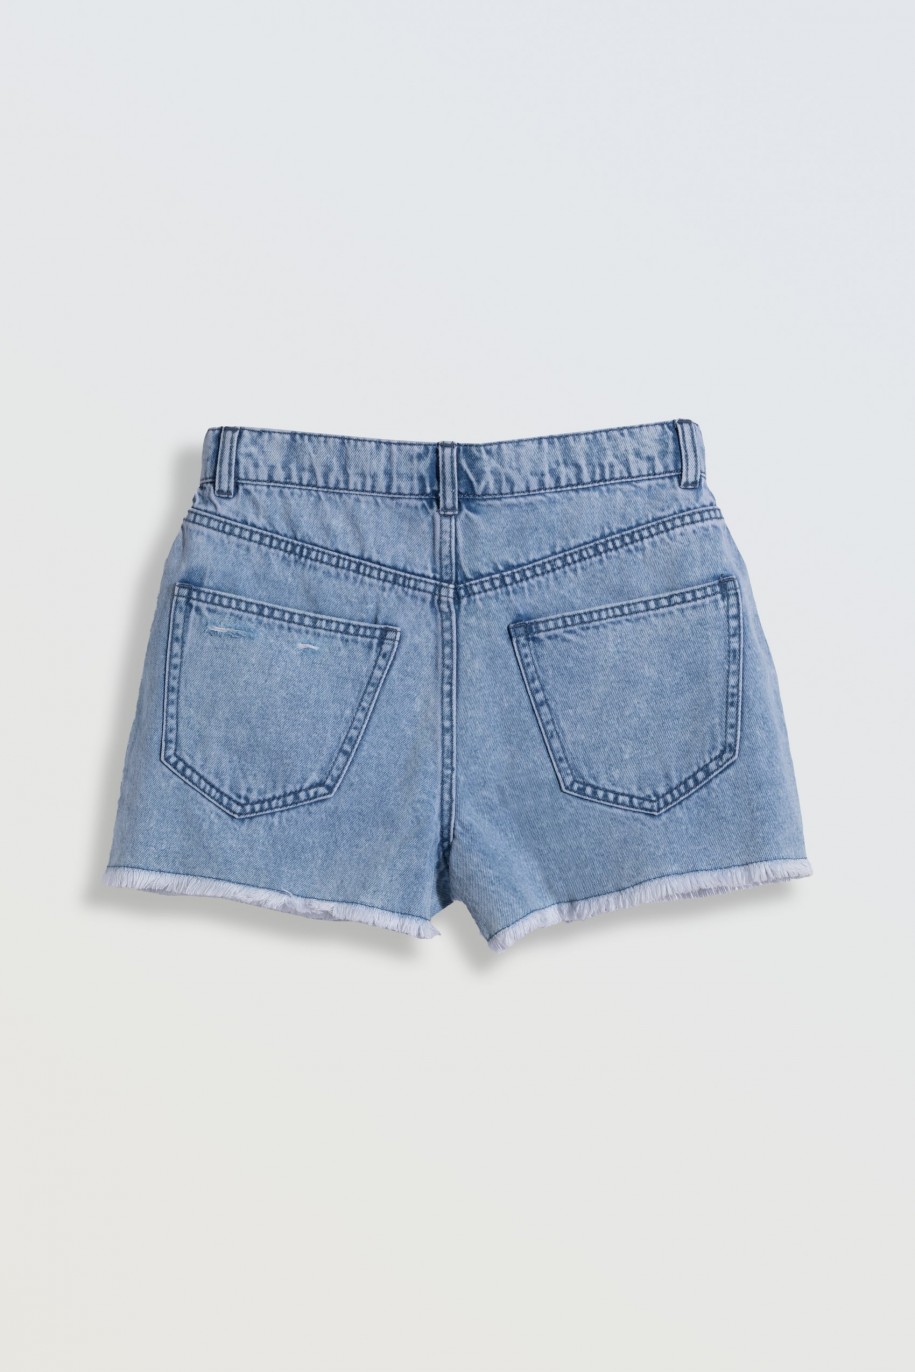 Jasnoniebieskie krótkie spodenki jeansowe z modnymi przetarciami - 46790